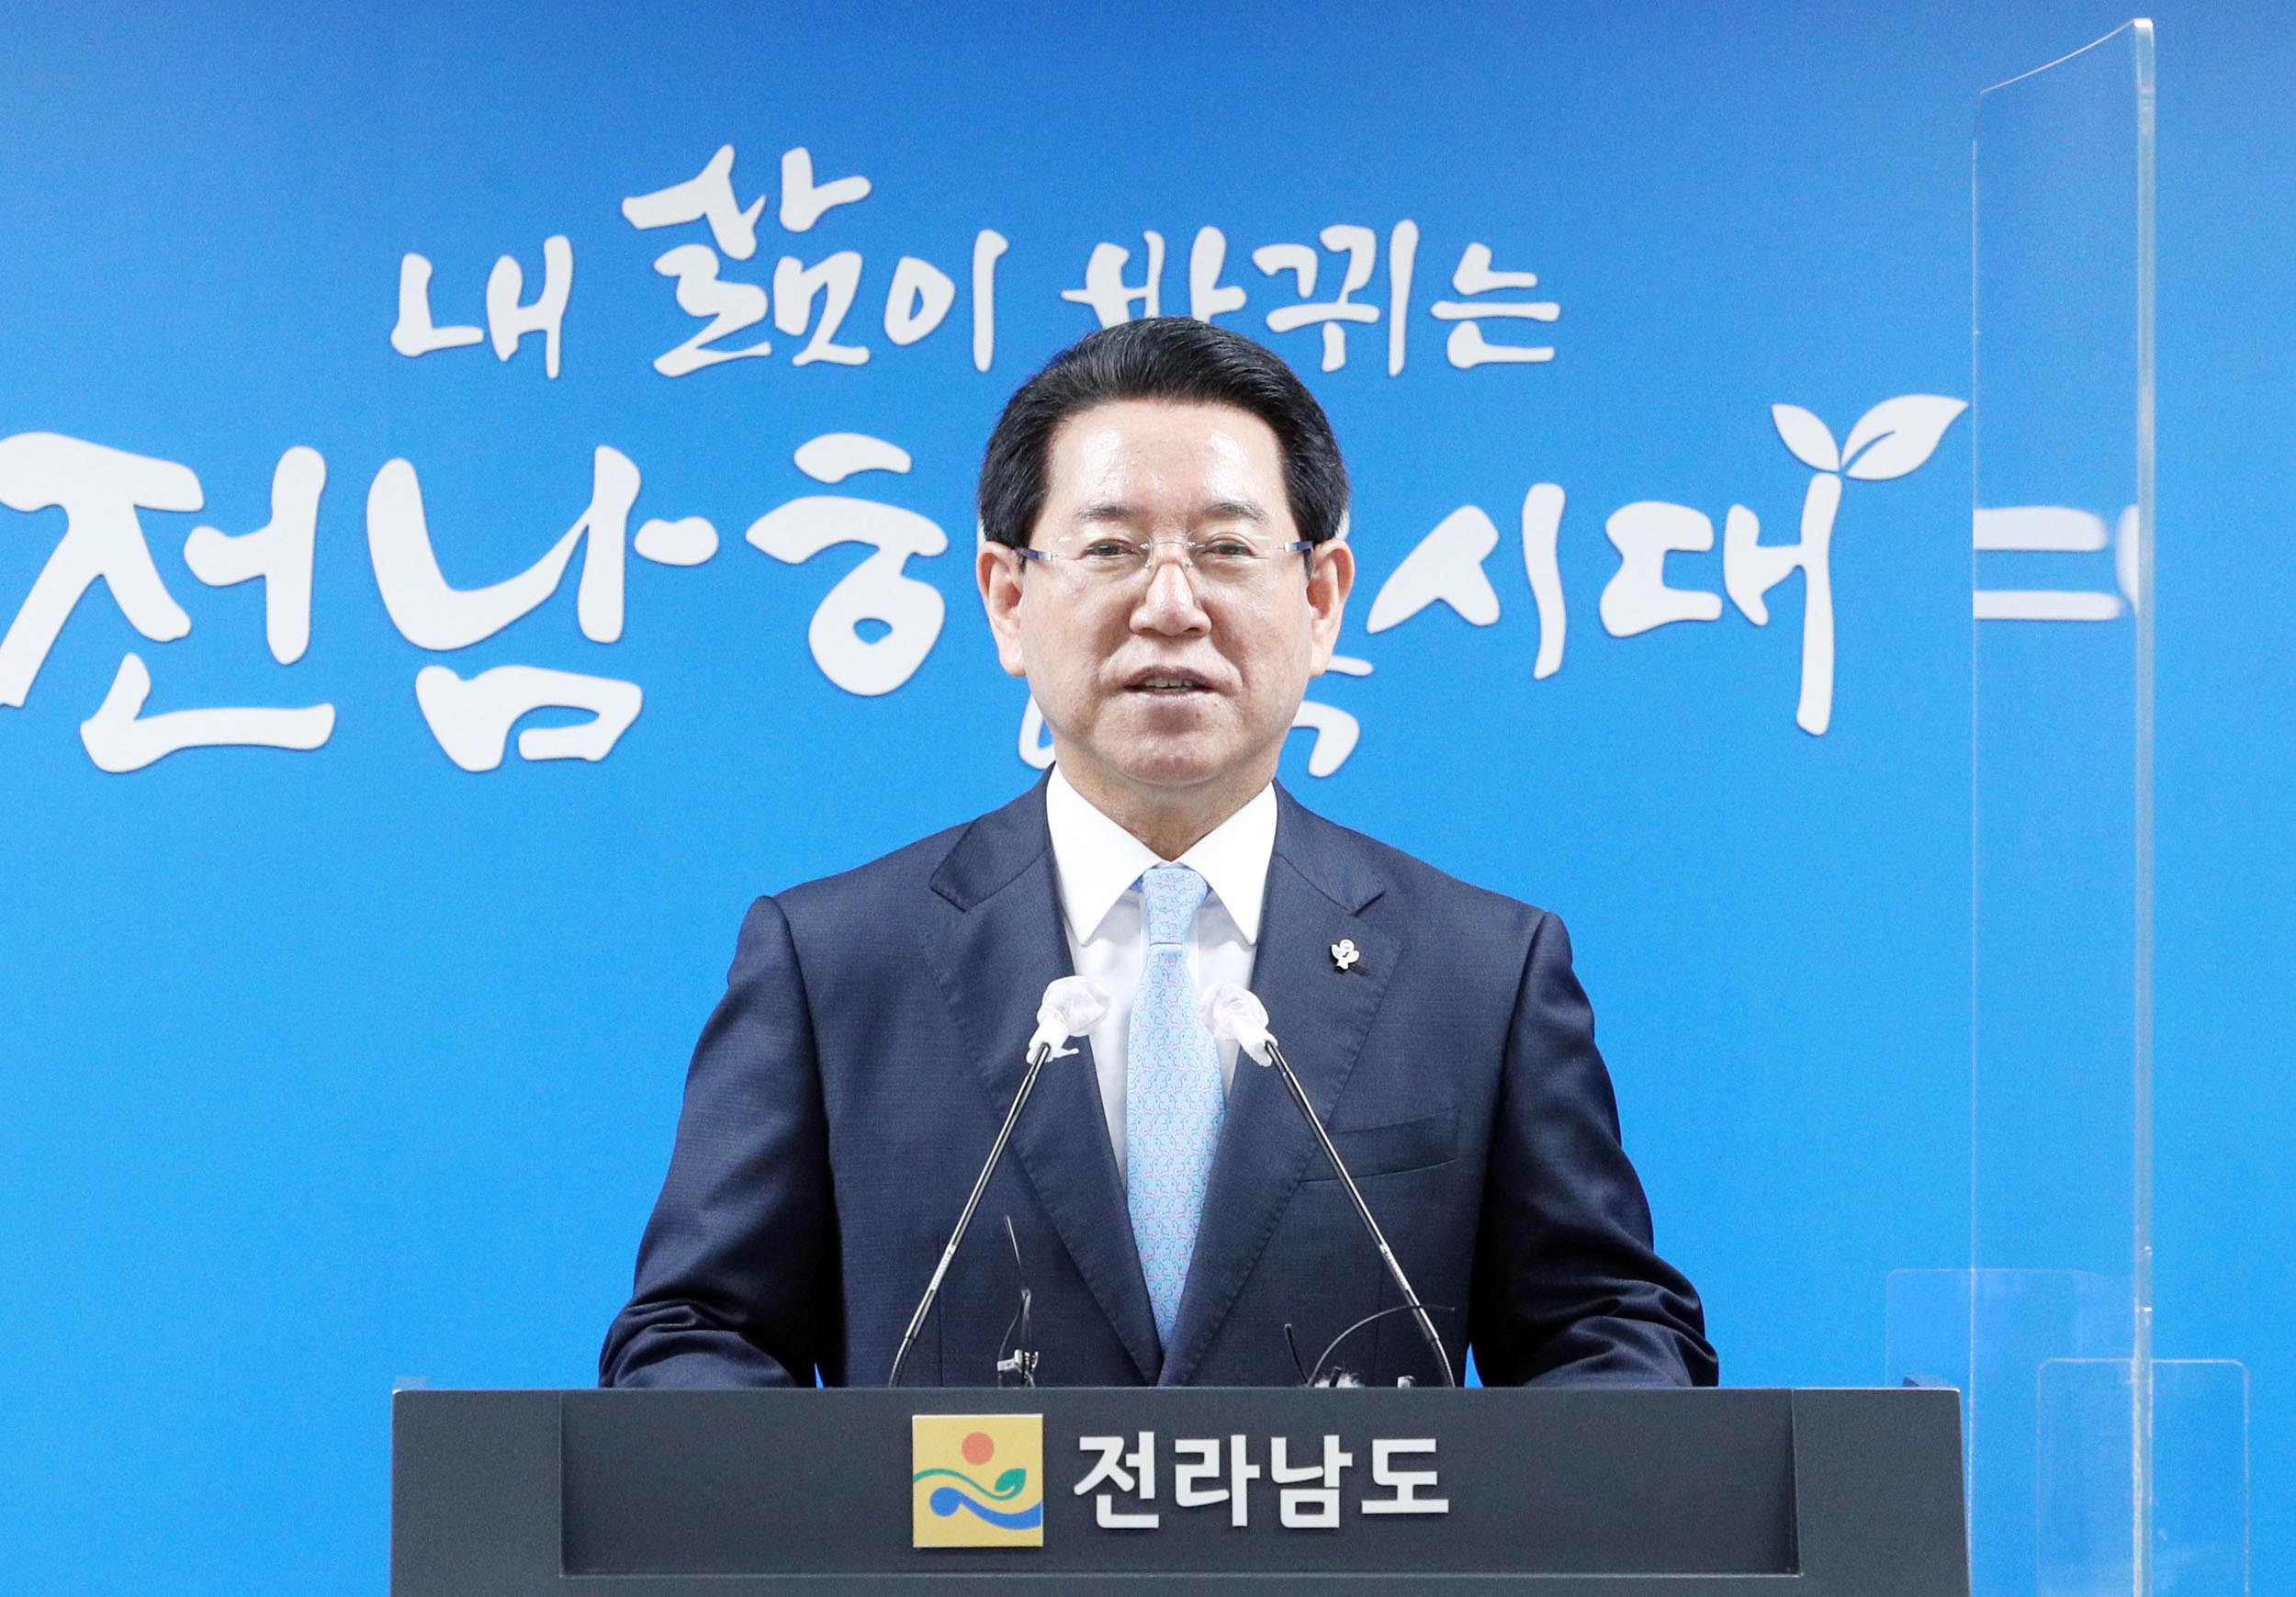 민선 8기 비전 공약 위원회 설치 관련 도민담화문 발표3